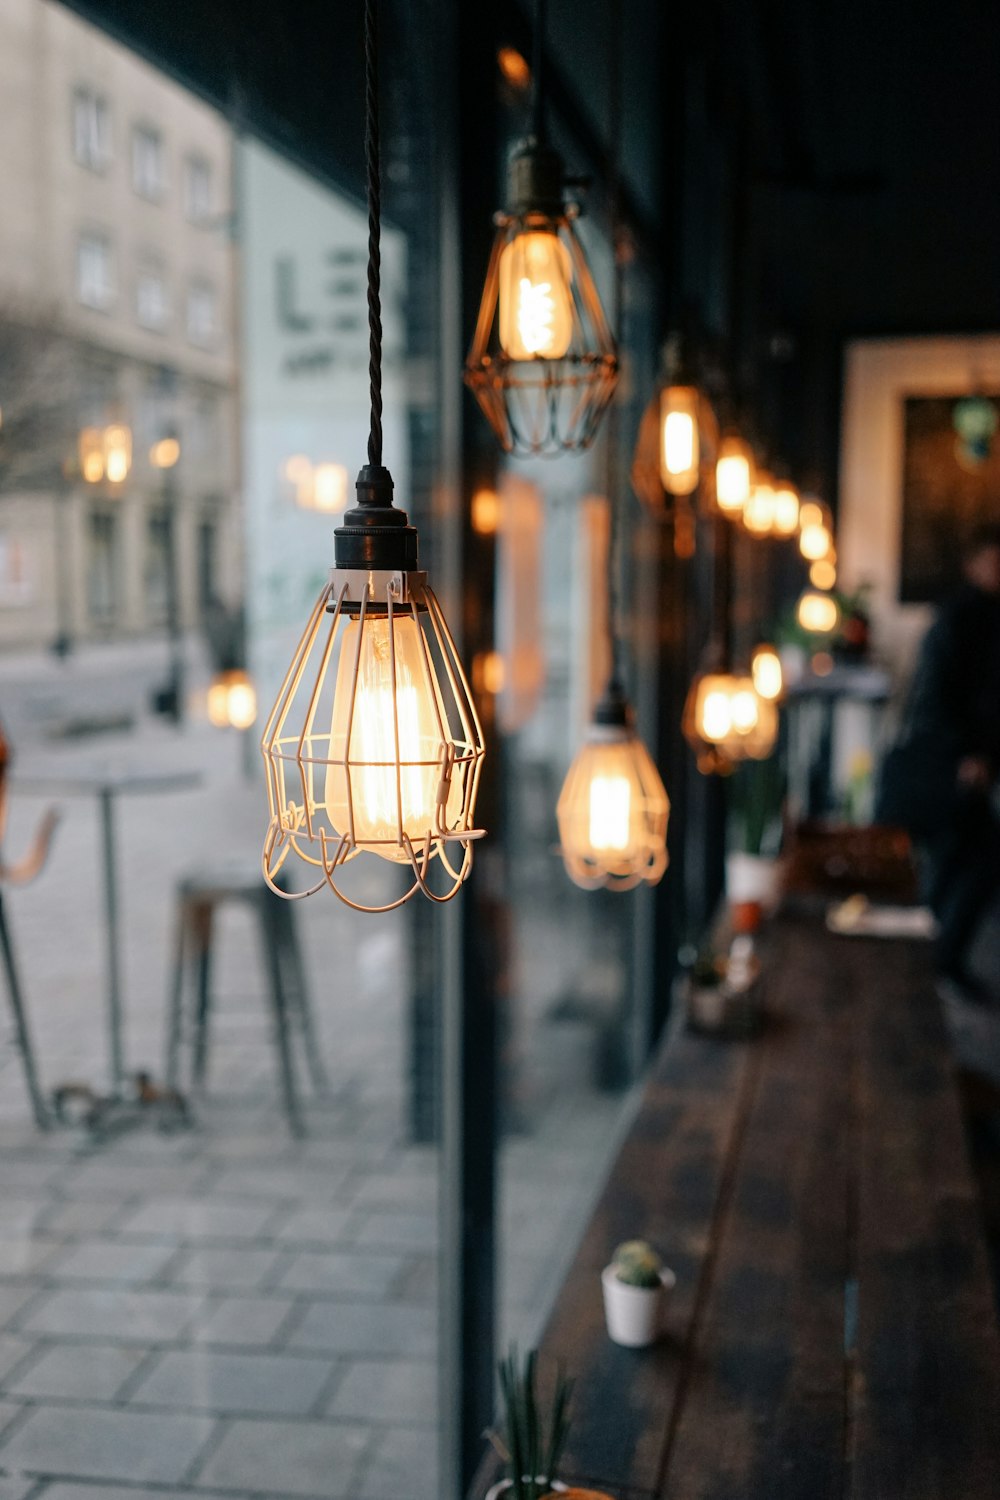 Fotografía de enfoque superficial de lámparas colgantes de tiendas